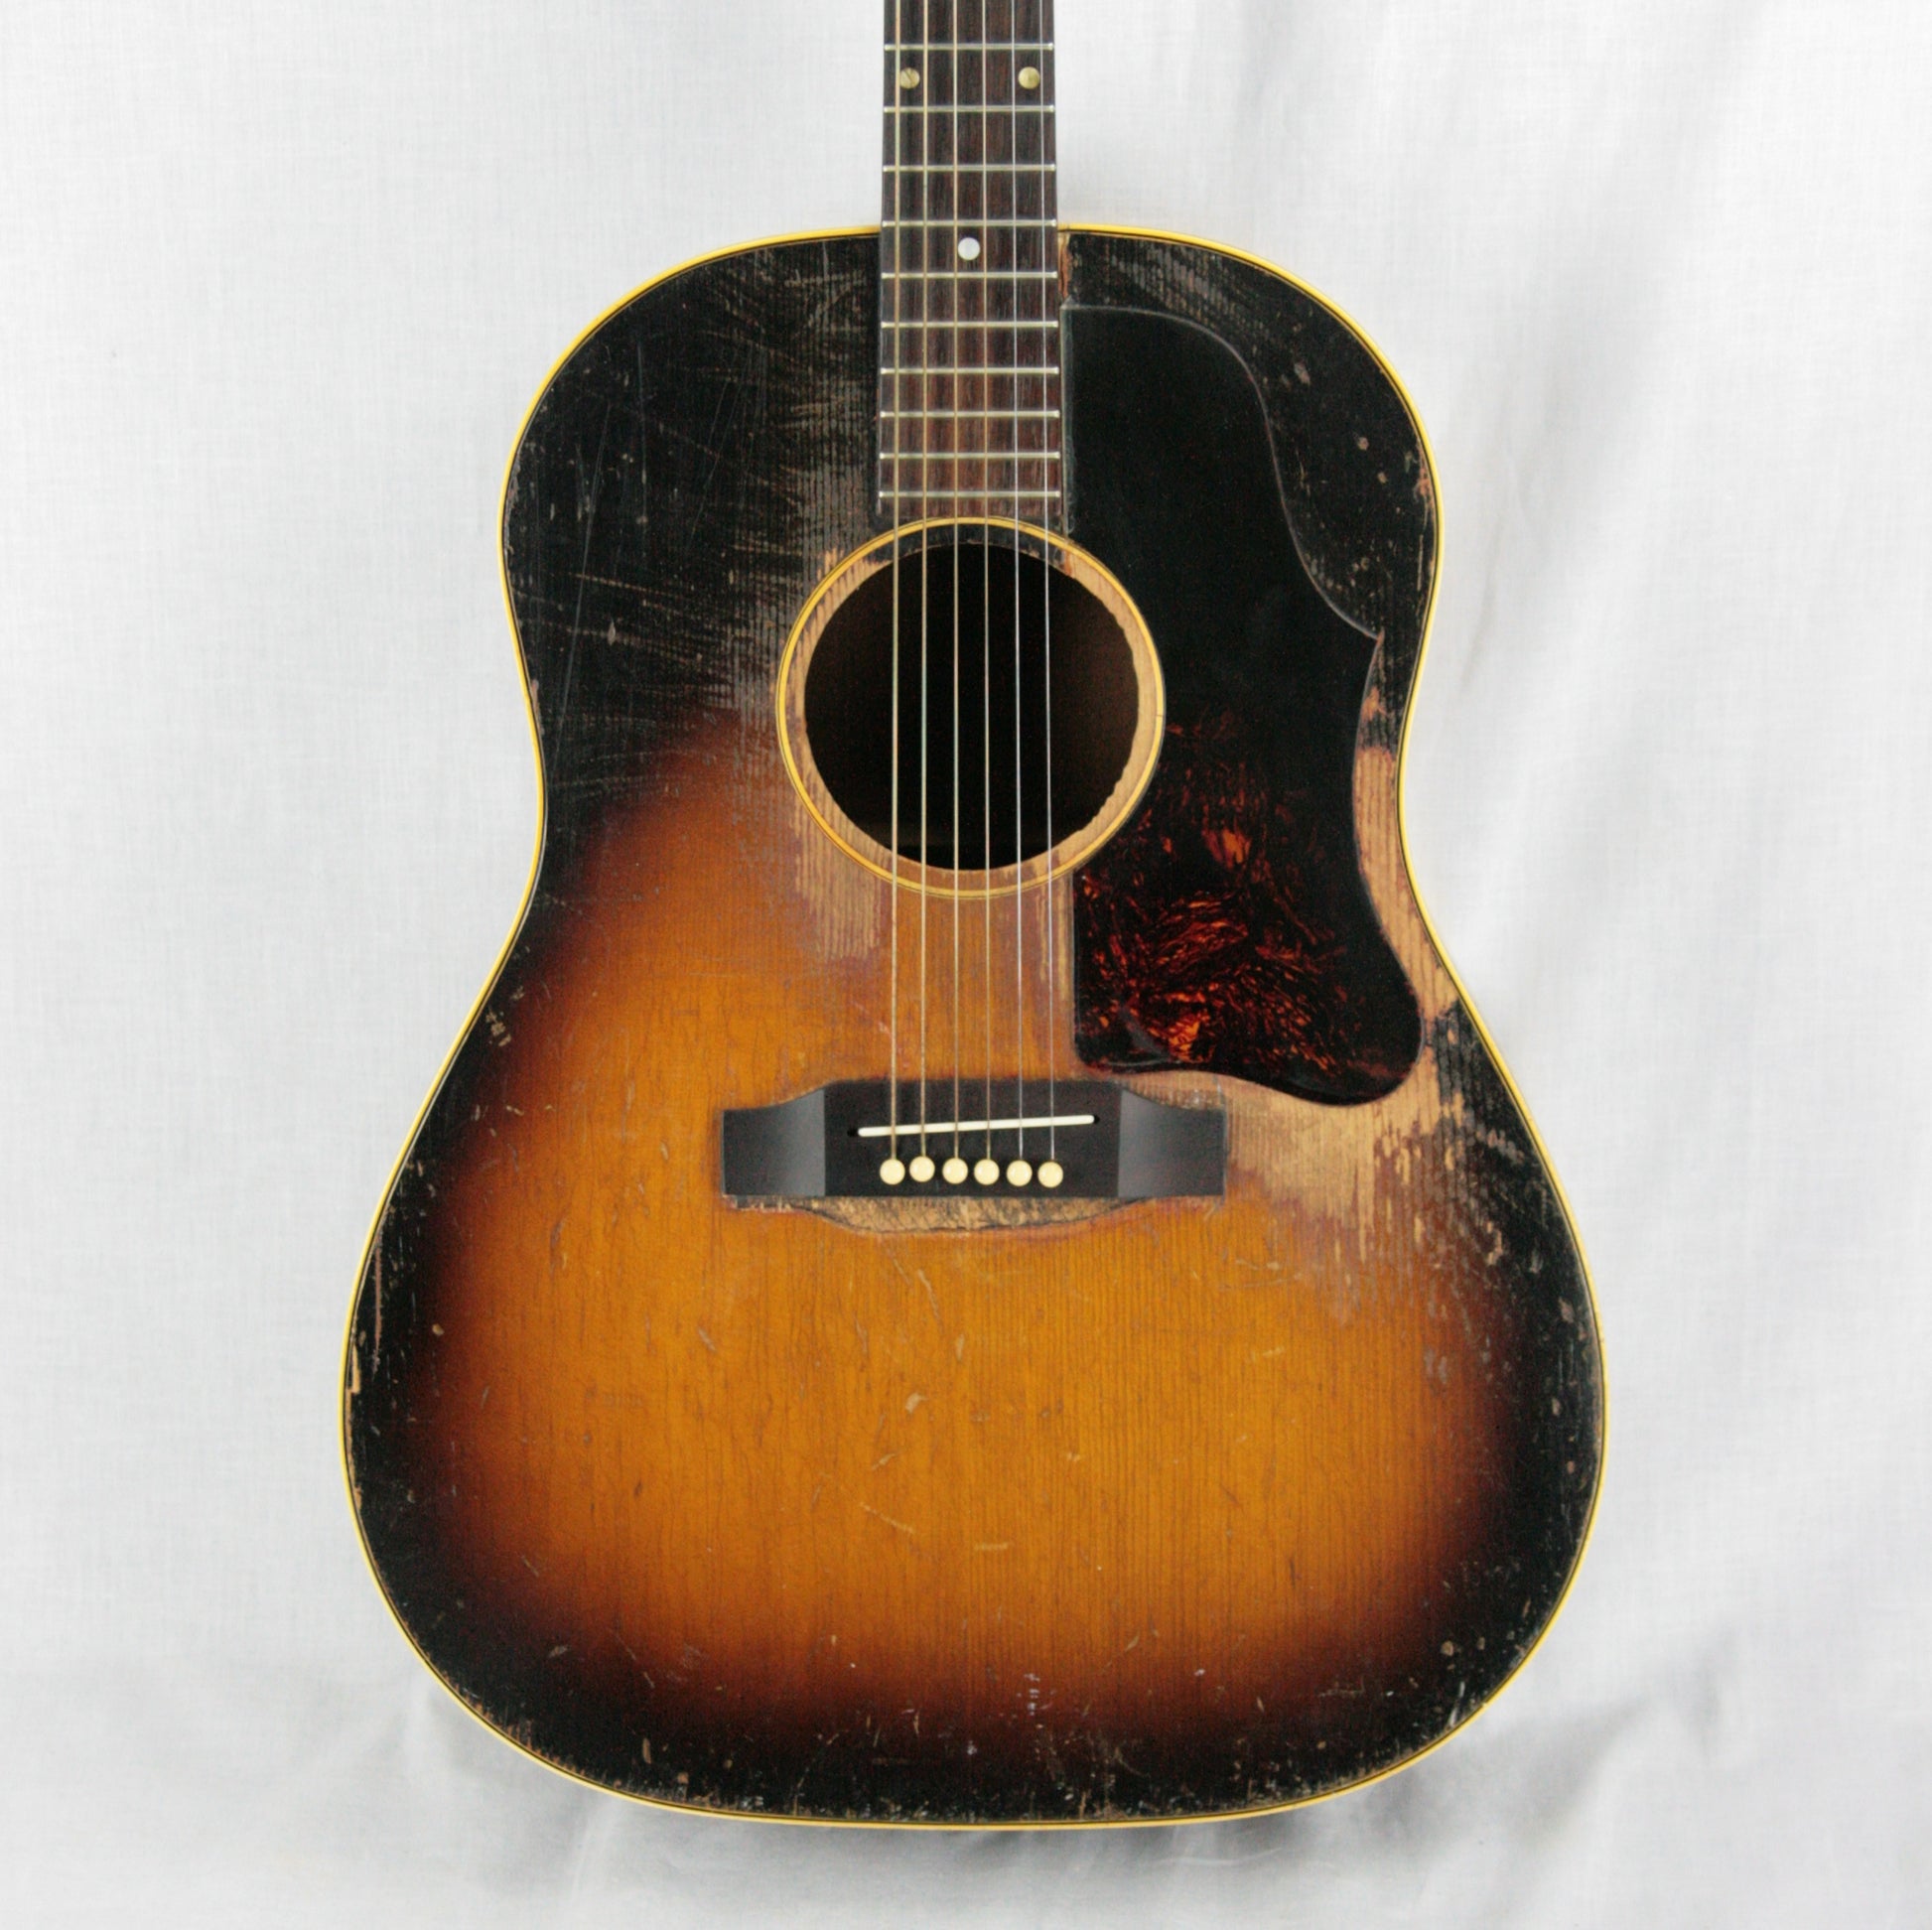 1950's Gibson J-45 well worn sunburst finish